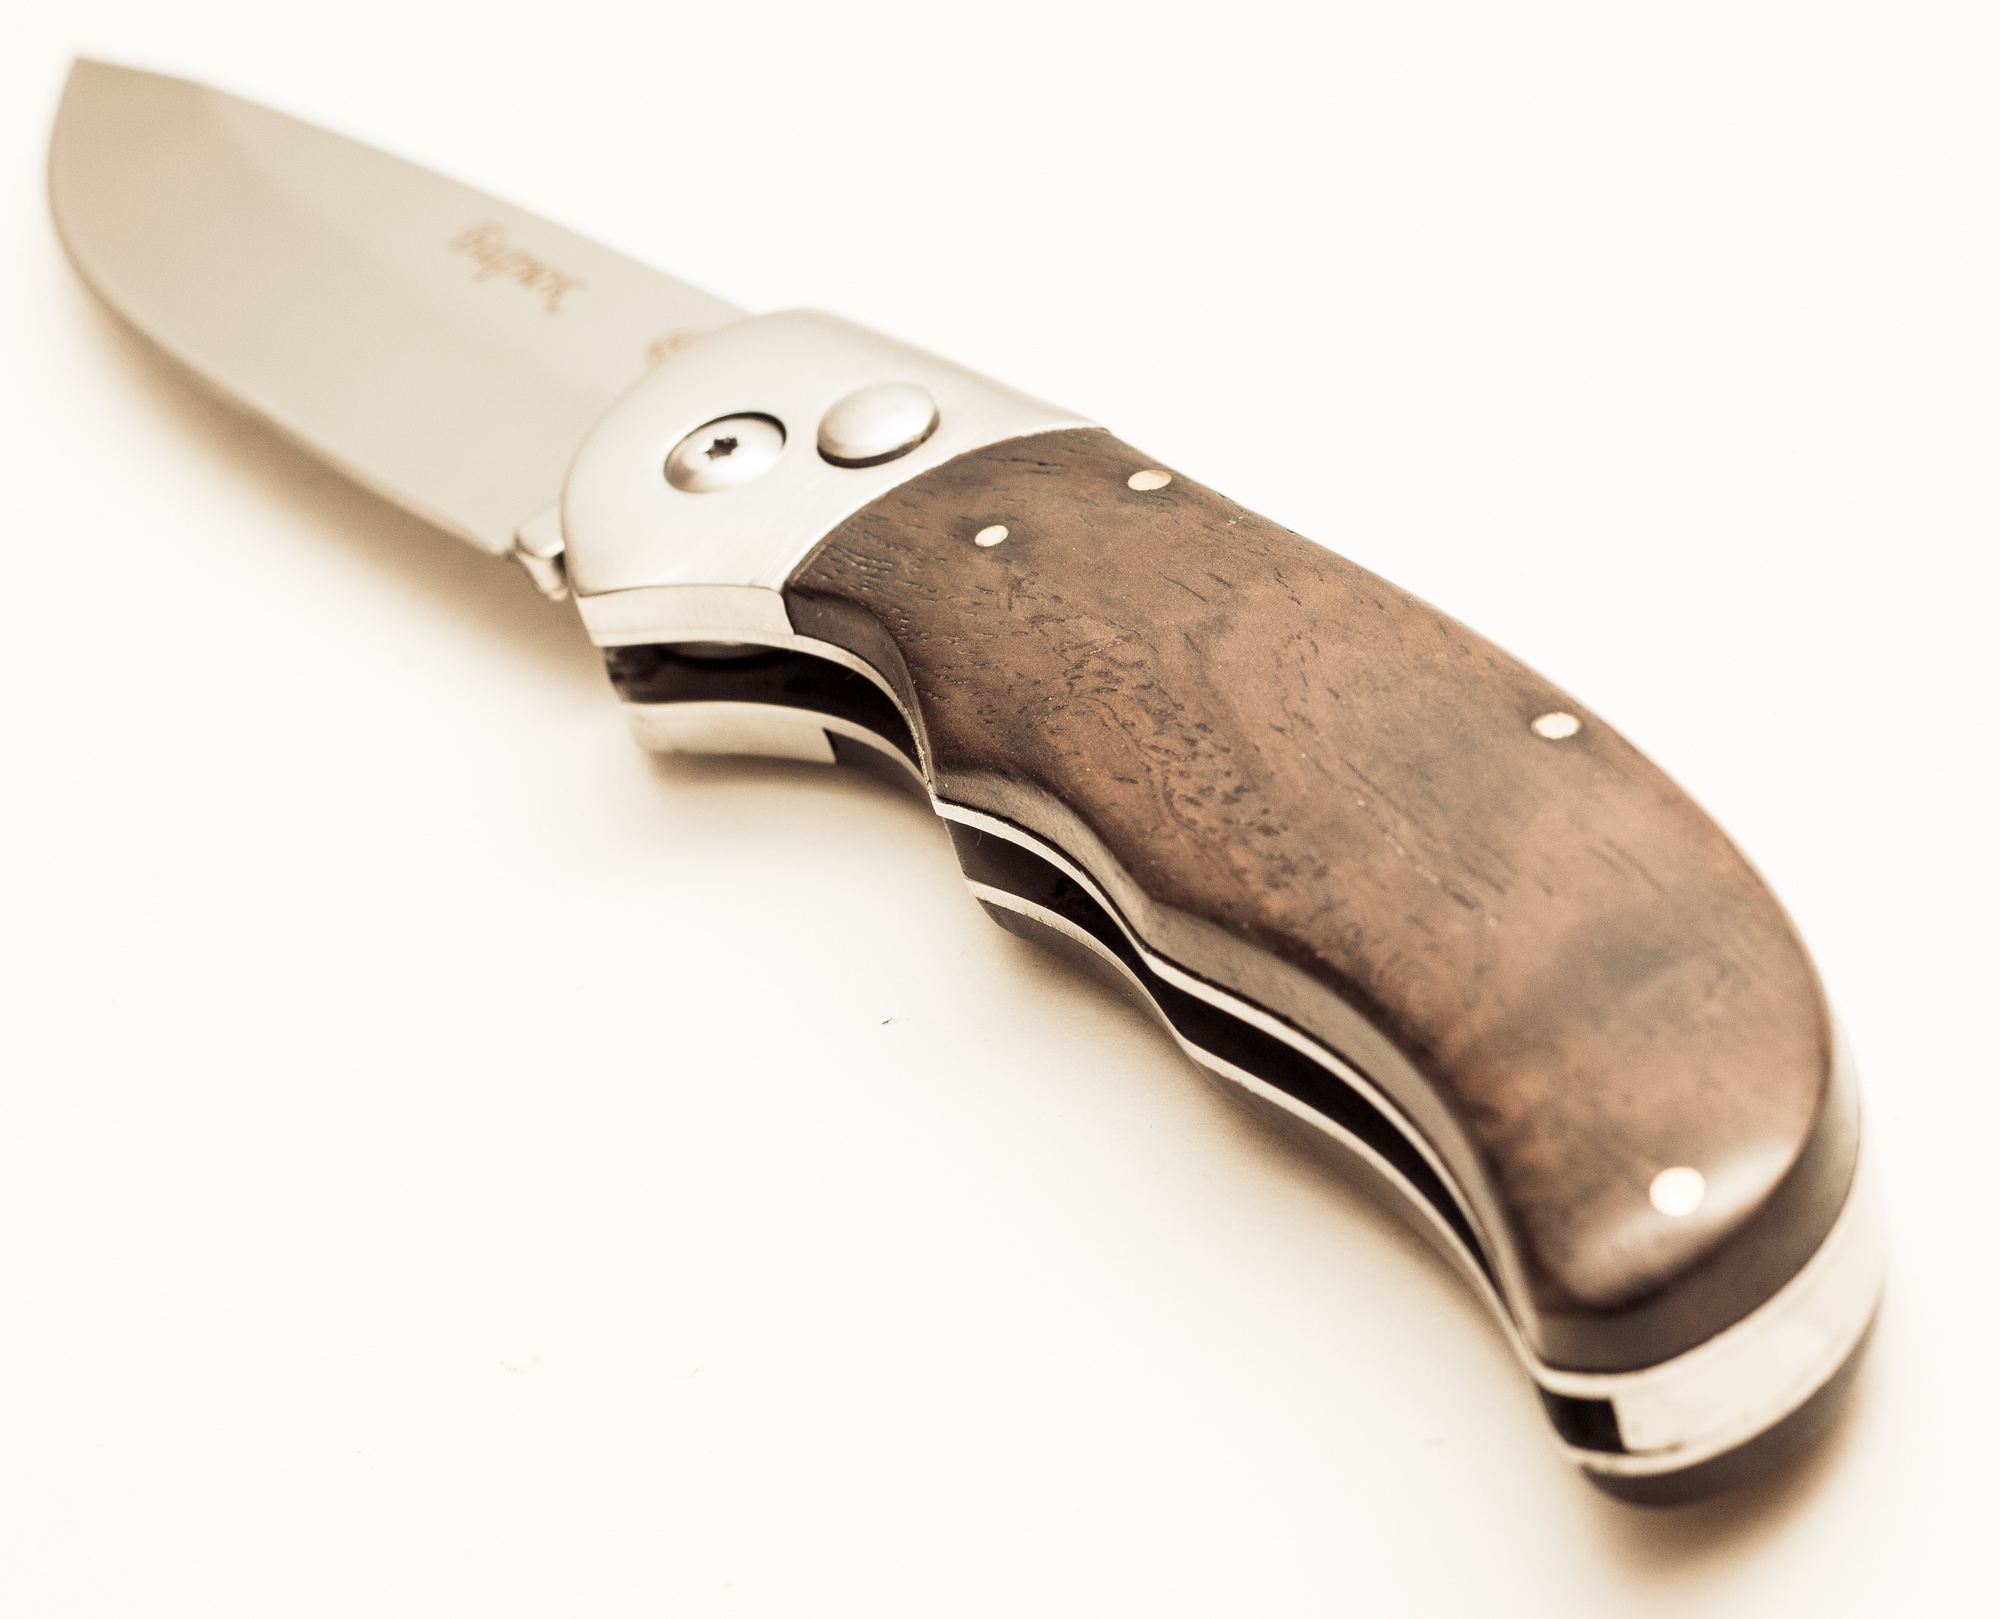  автоматический нож Бирюк, B191-34 по цене 2180.0 руб. -  .